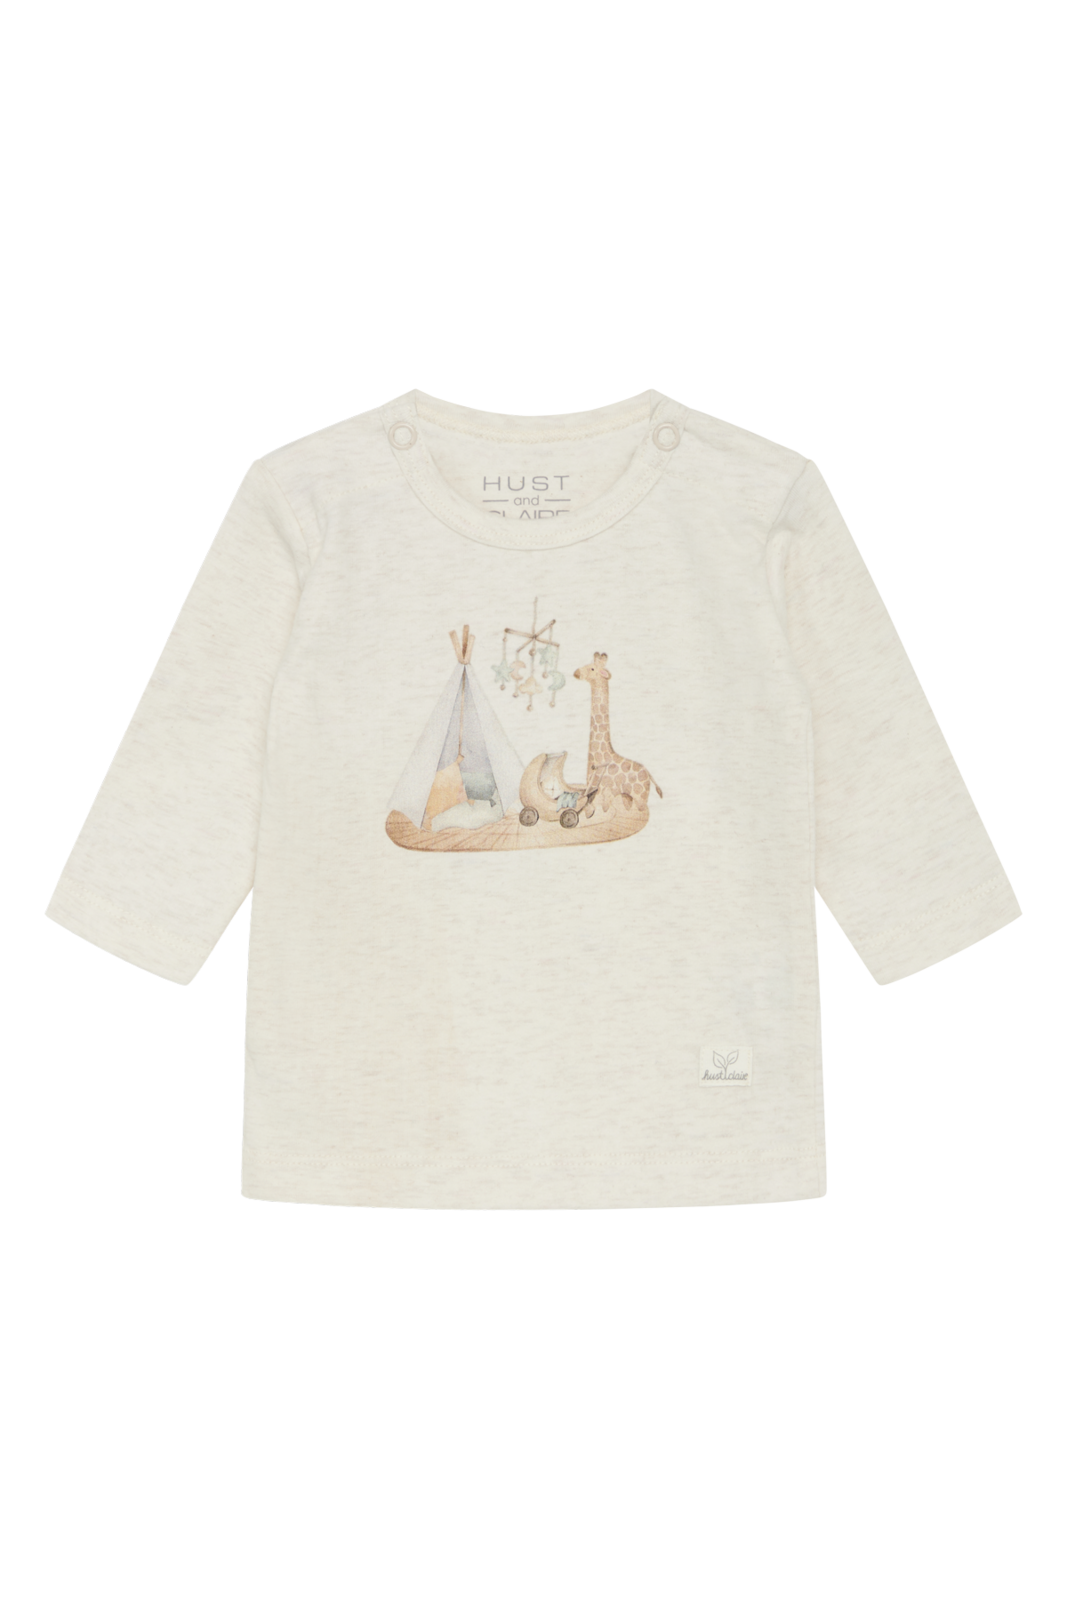 Baby Mädchen Langarm Shirt 595 39243 Weiss